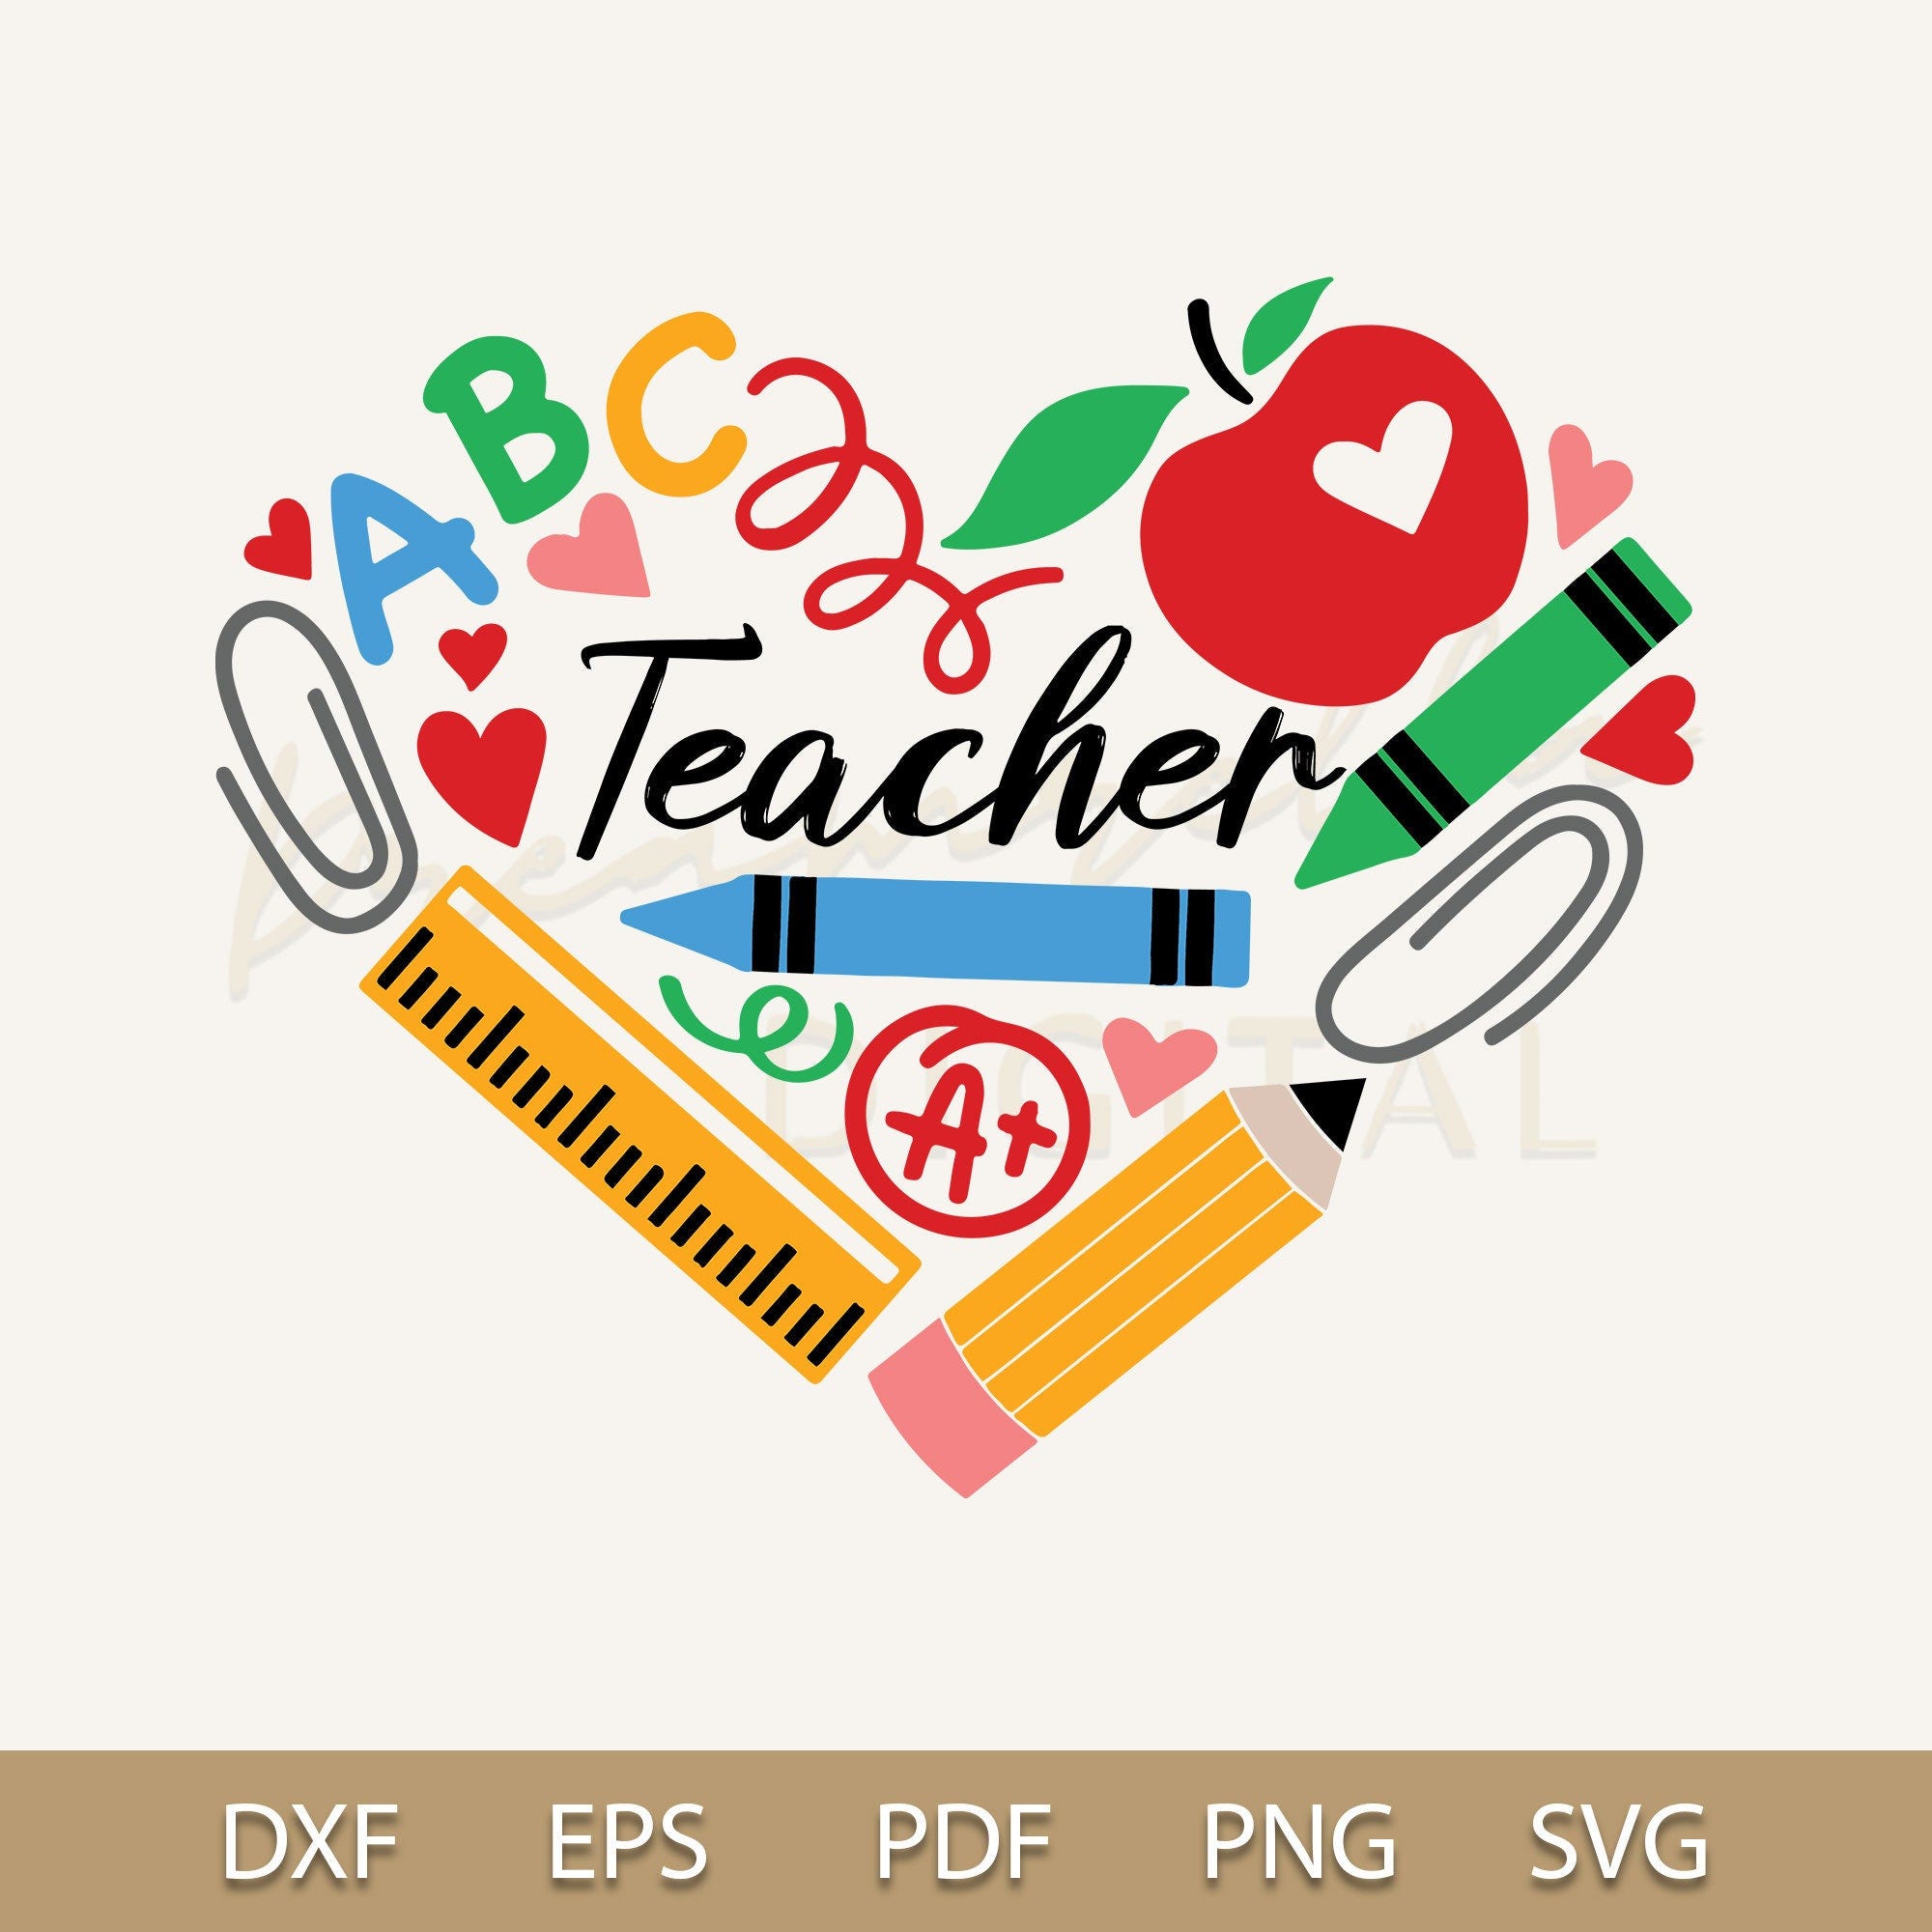 Teacher Svg, Teacher Heart Svg, Teacher Life Svg, Best Teacher Sublimation, Favorite Teacher Shirt Svg, School Supplies Svg, Cricut Cut File